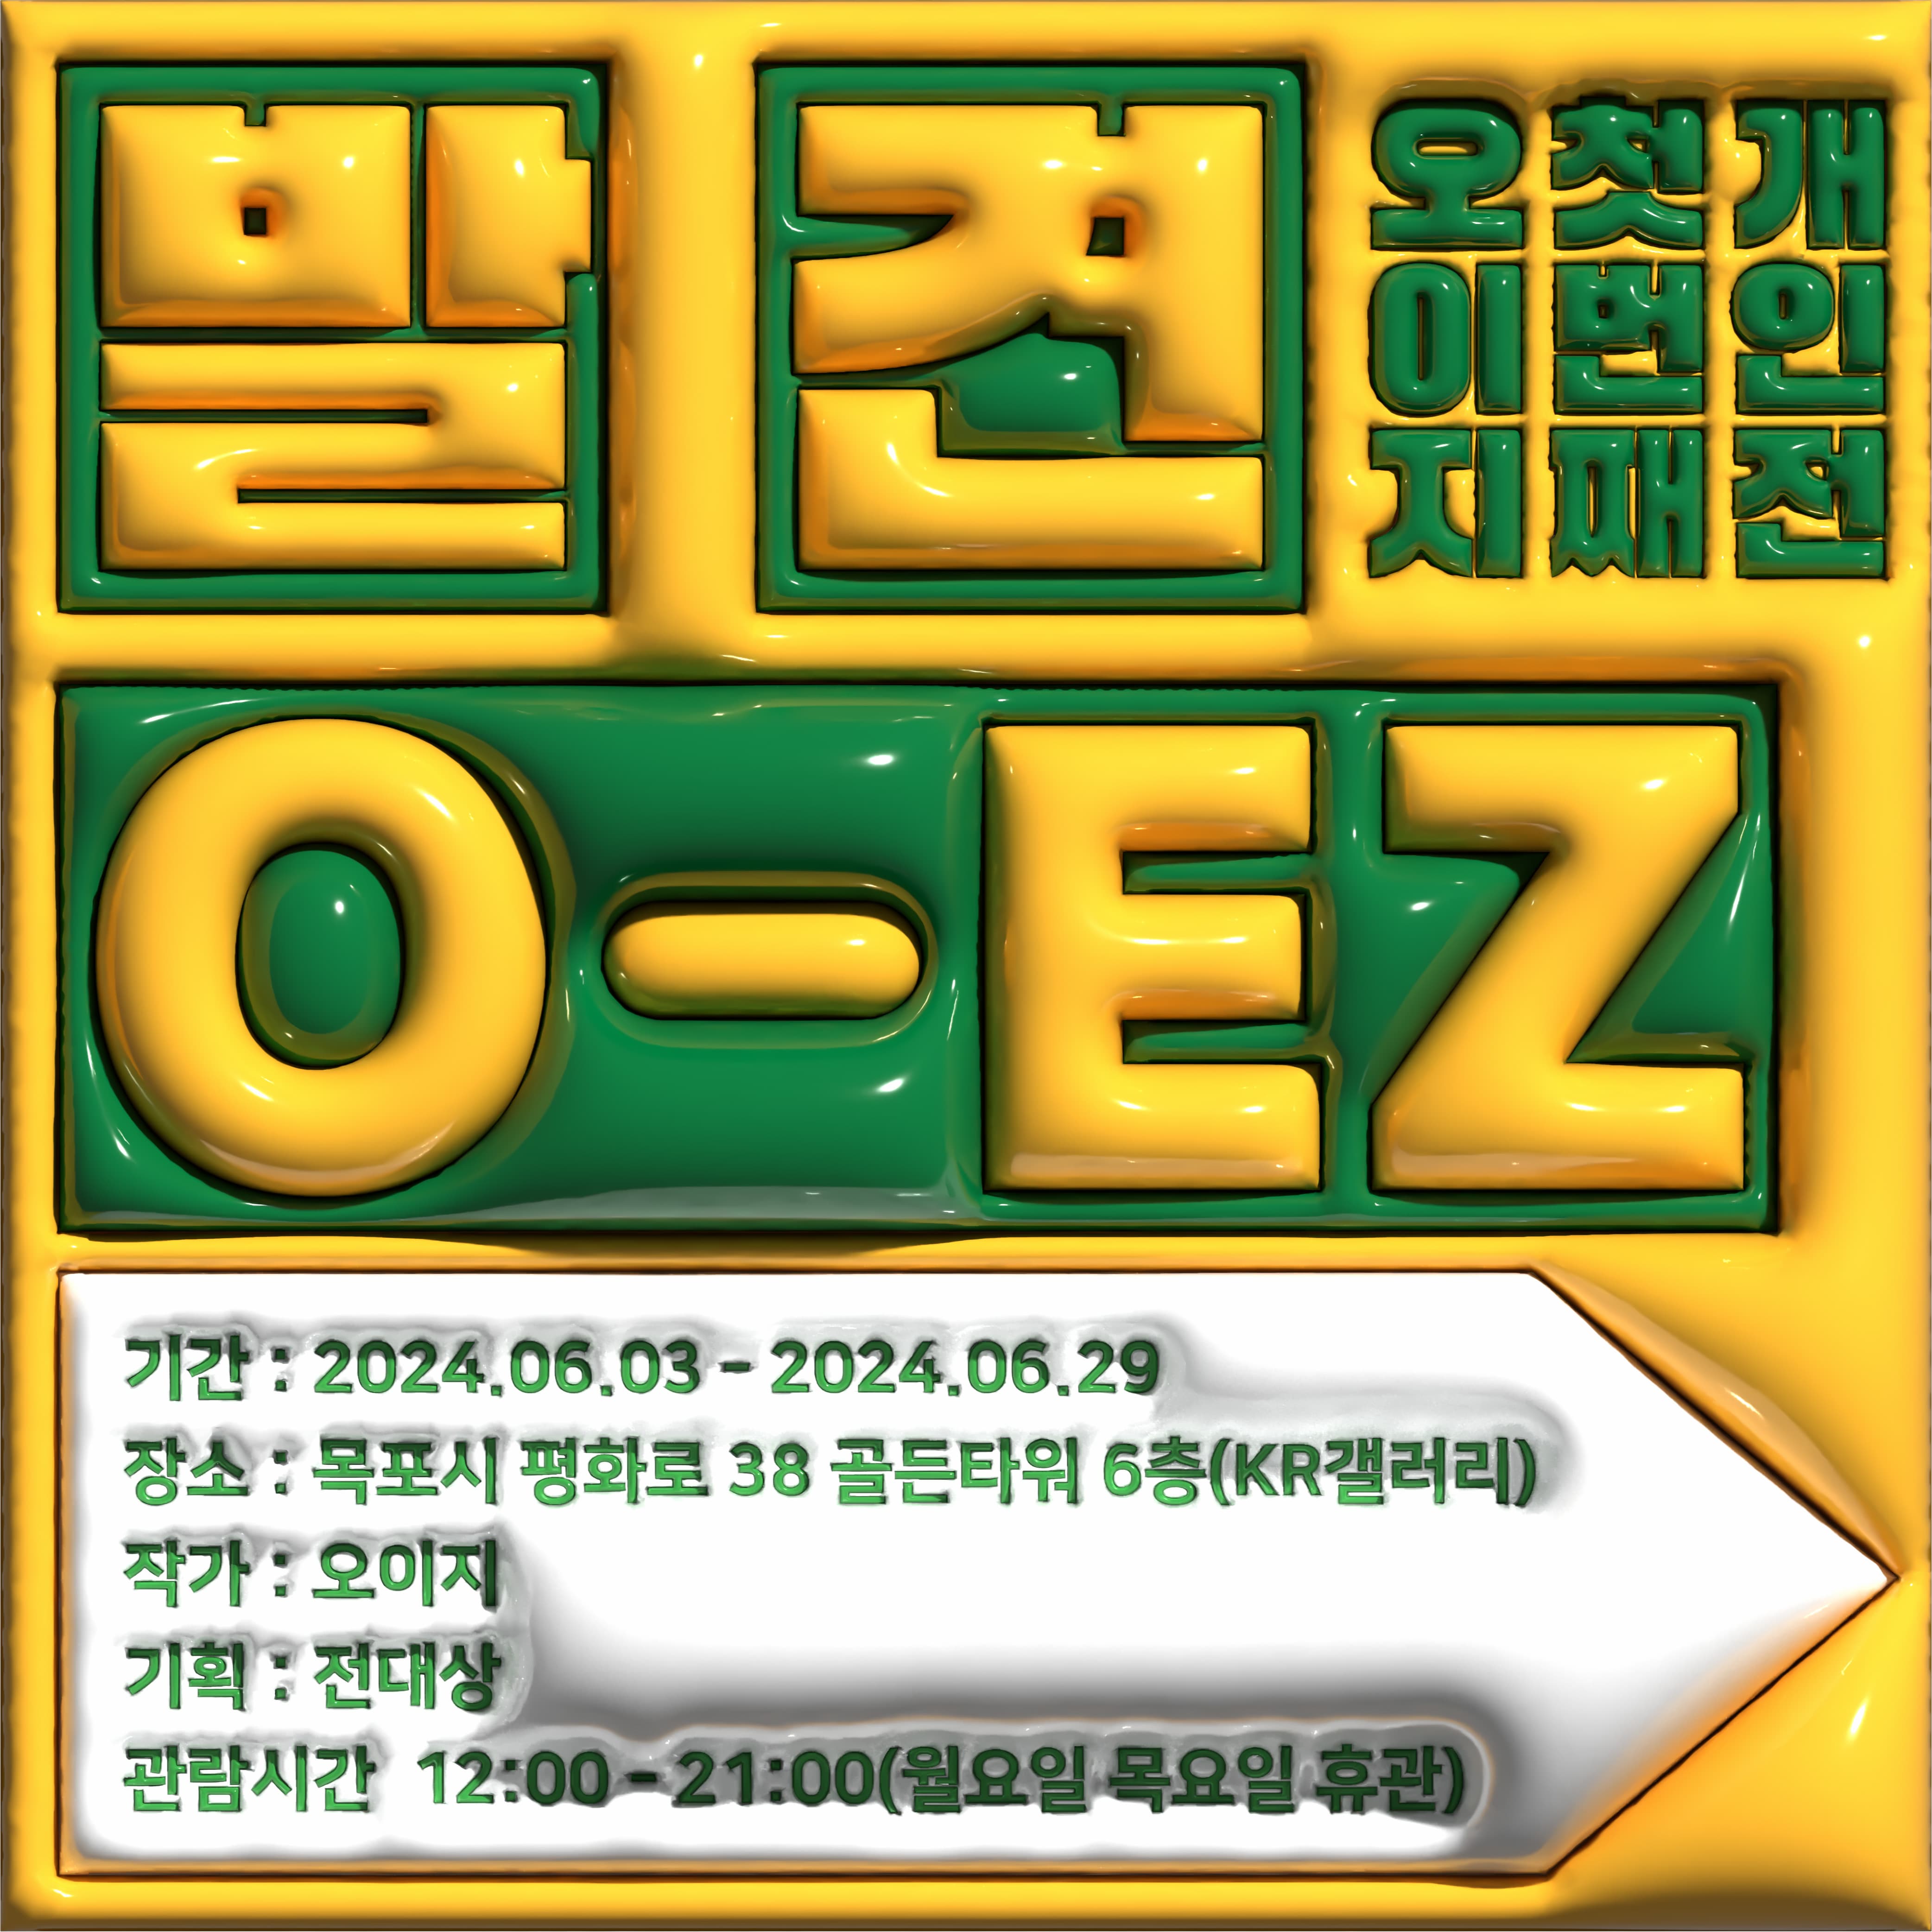 O-EZ 현대인 시리즈 개인전 | 2024.06.03. - 06.29. 12:00~21:00 | KR갤러리, 목포시 평화로 38 골든타워 6층